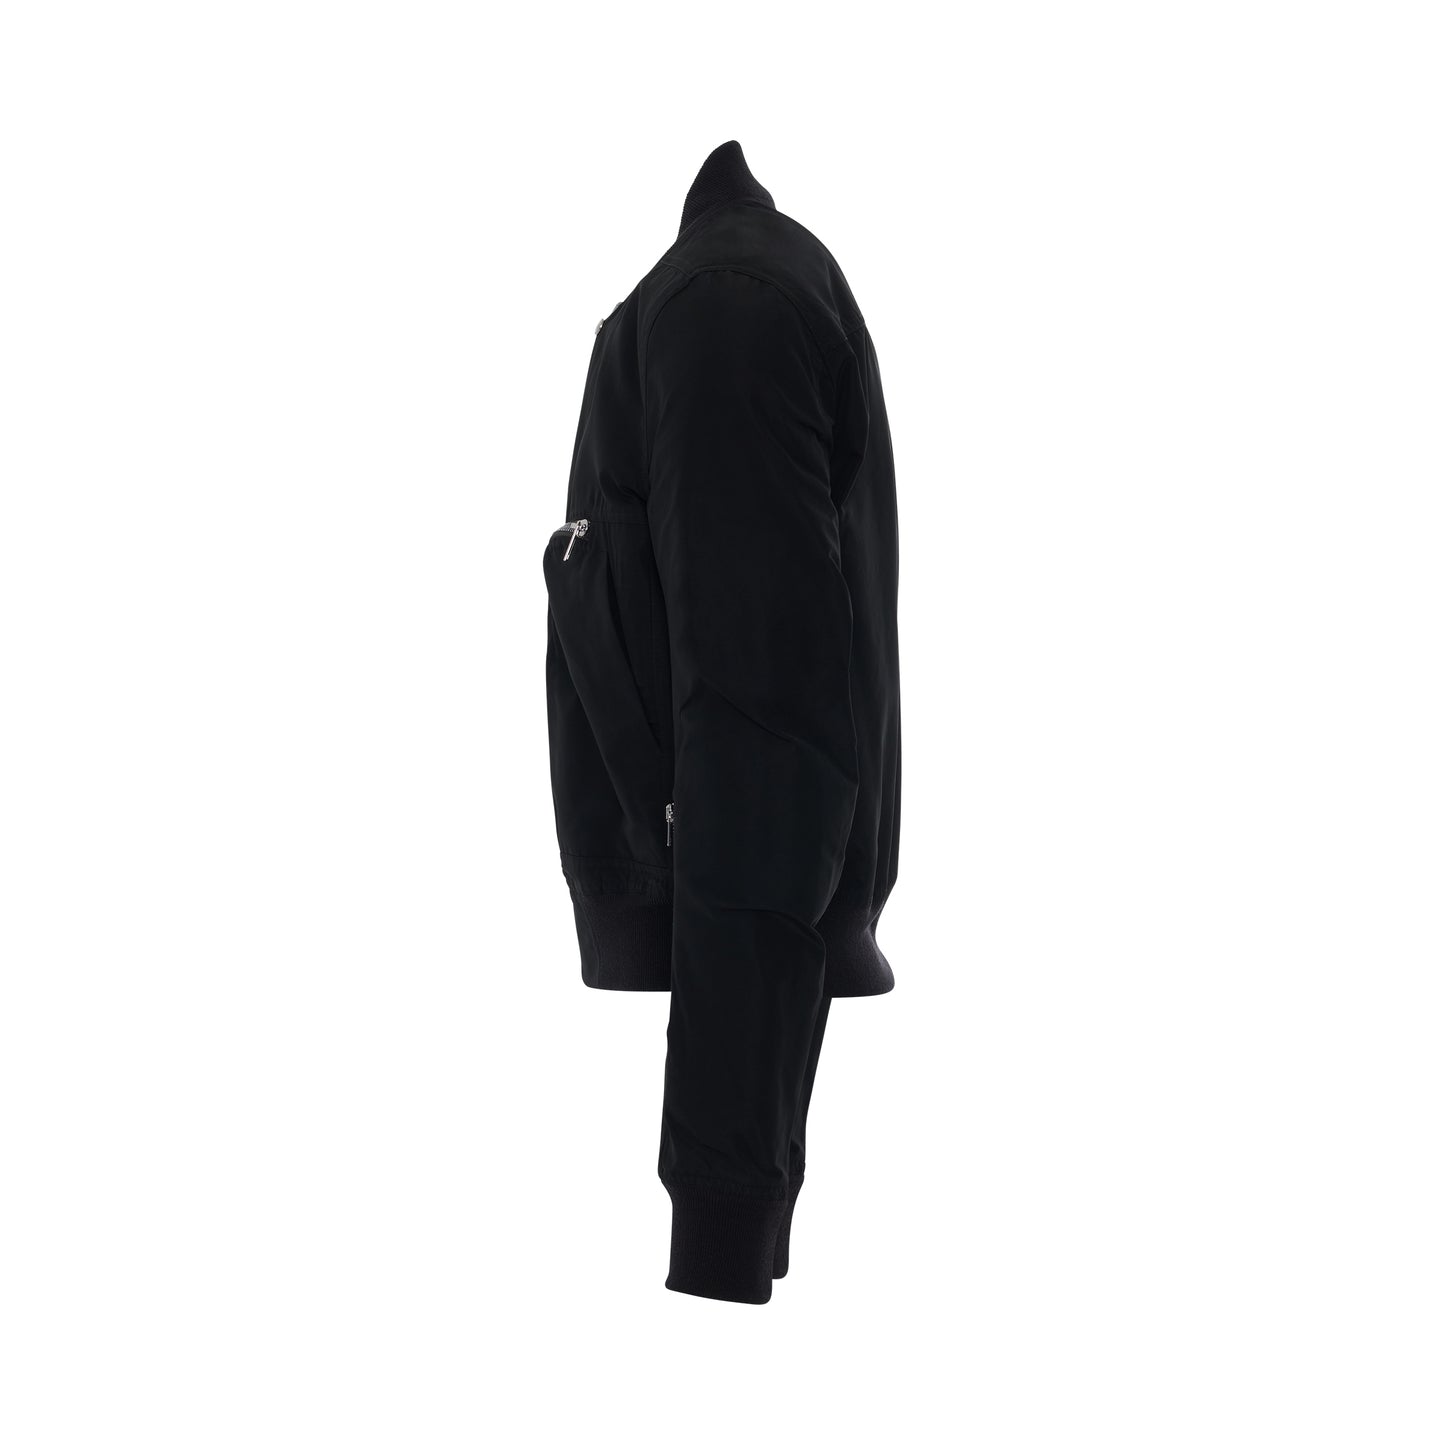 Bauhaus Flight Jacket in Black